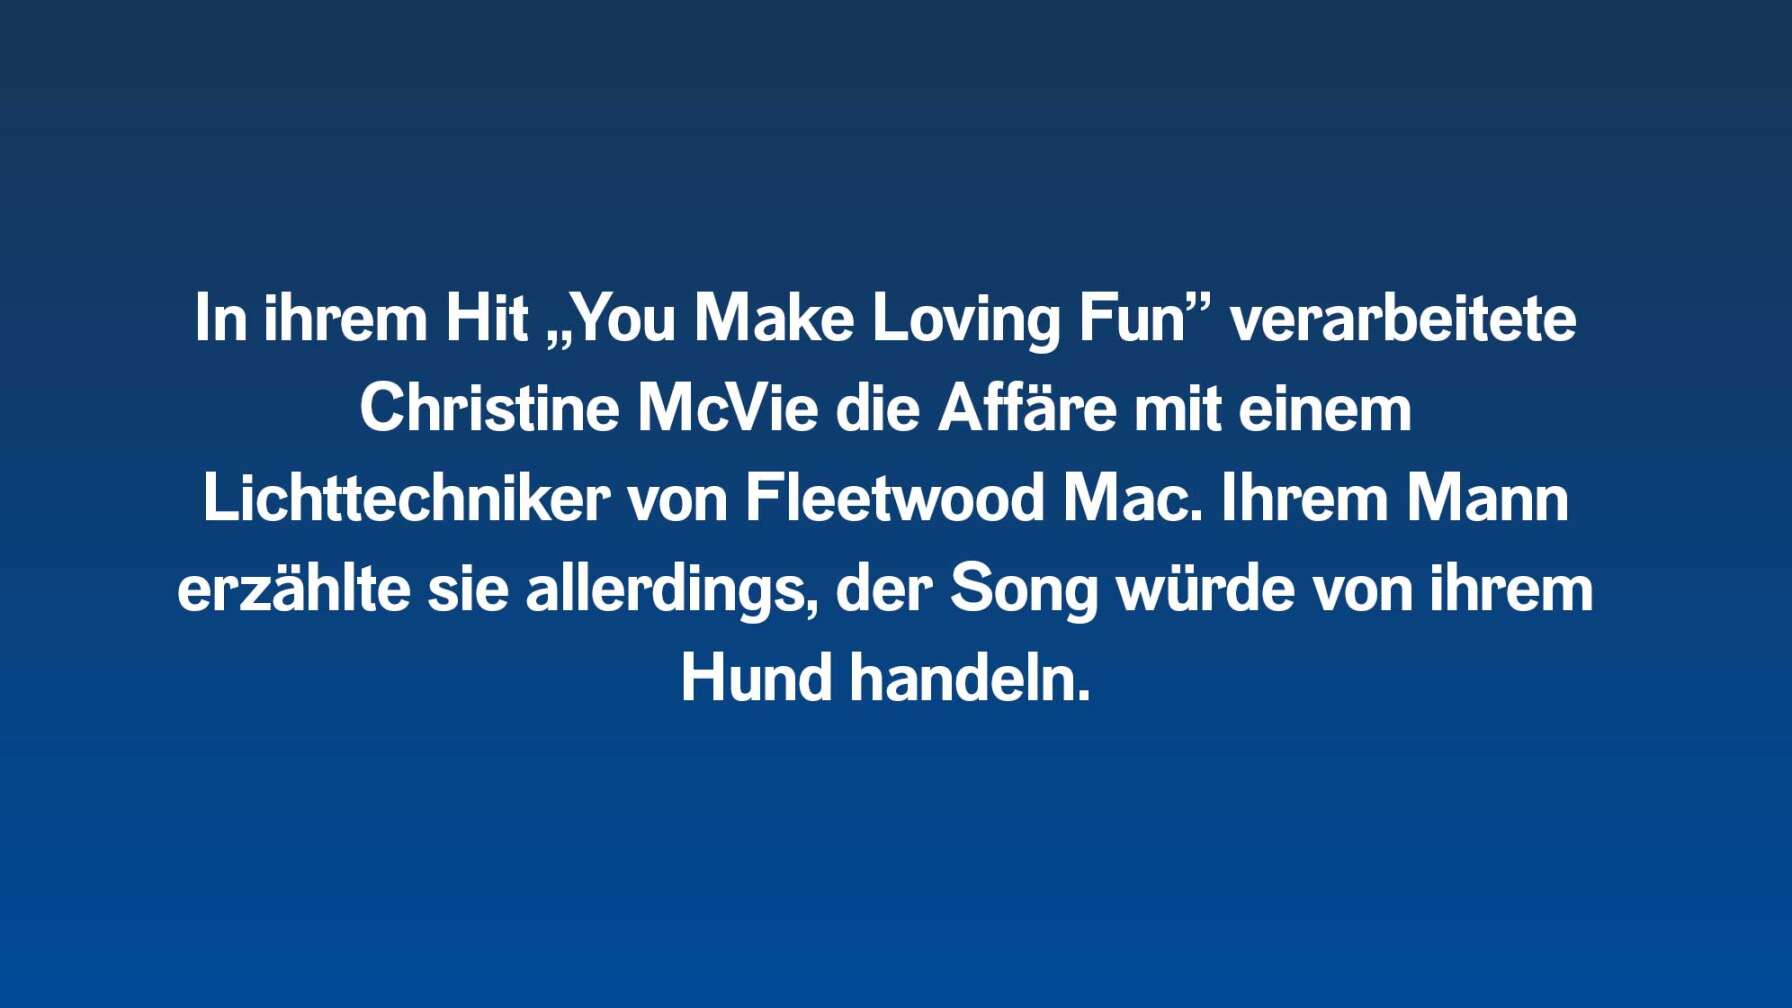 In ihrem Hit „You Make Loving Fun” verarbeitete Christine McVie die Affäre mit einem Lichttechniker von Fleetwood Mac. Ihrem Mann erzählte sie allerdings, der Song würde von ihrem Hund handeln.